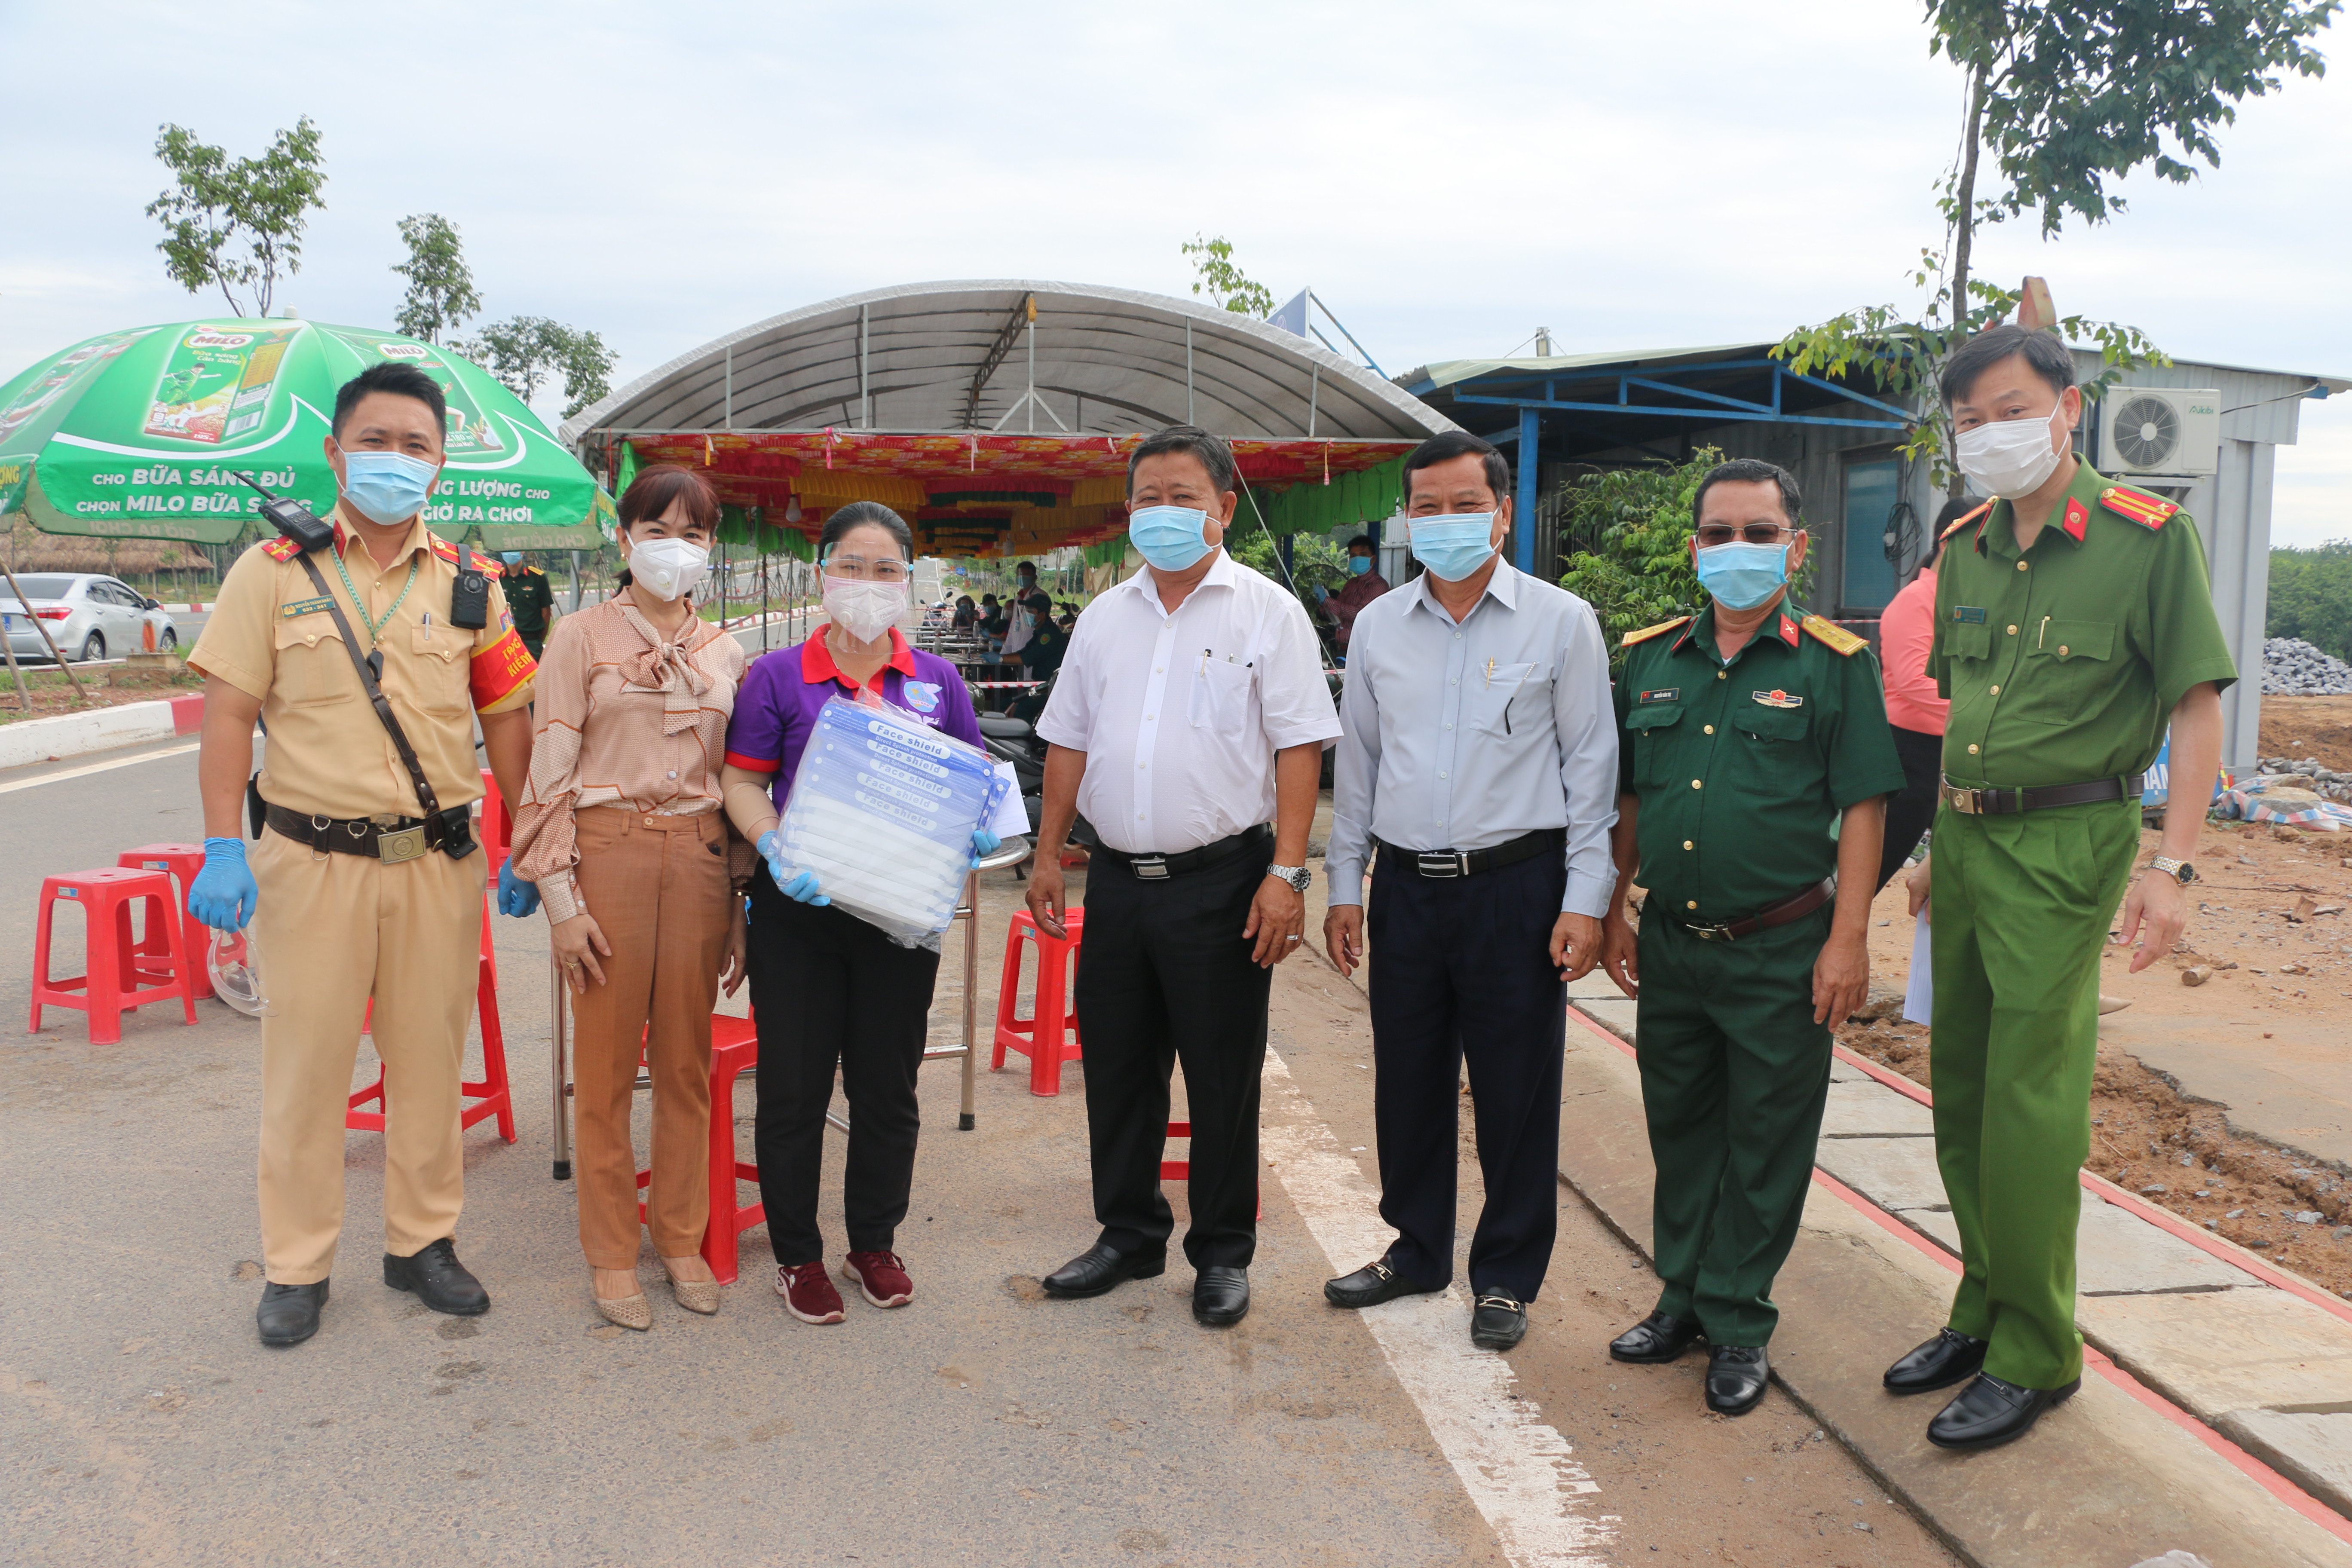 Đoàn lãnh đạo huyện Bàu Bàng thăm và động viên các lực lượng làm nhiệm vụ tại 2 chốt kiểm soát dịch bệnh Covid-19 trên địa bàn xã Lai Hưng